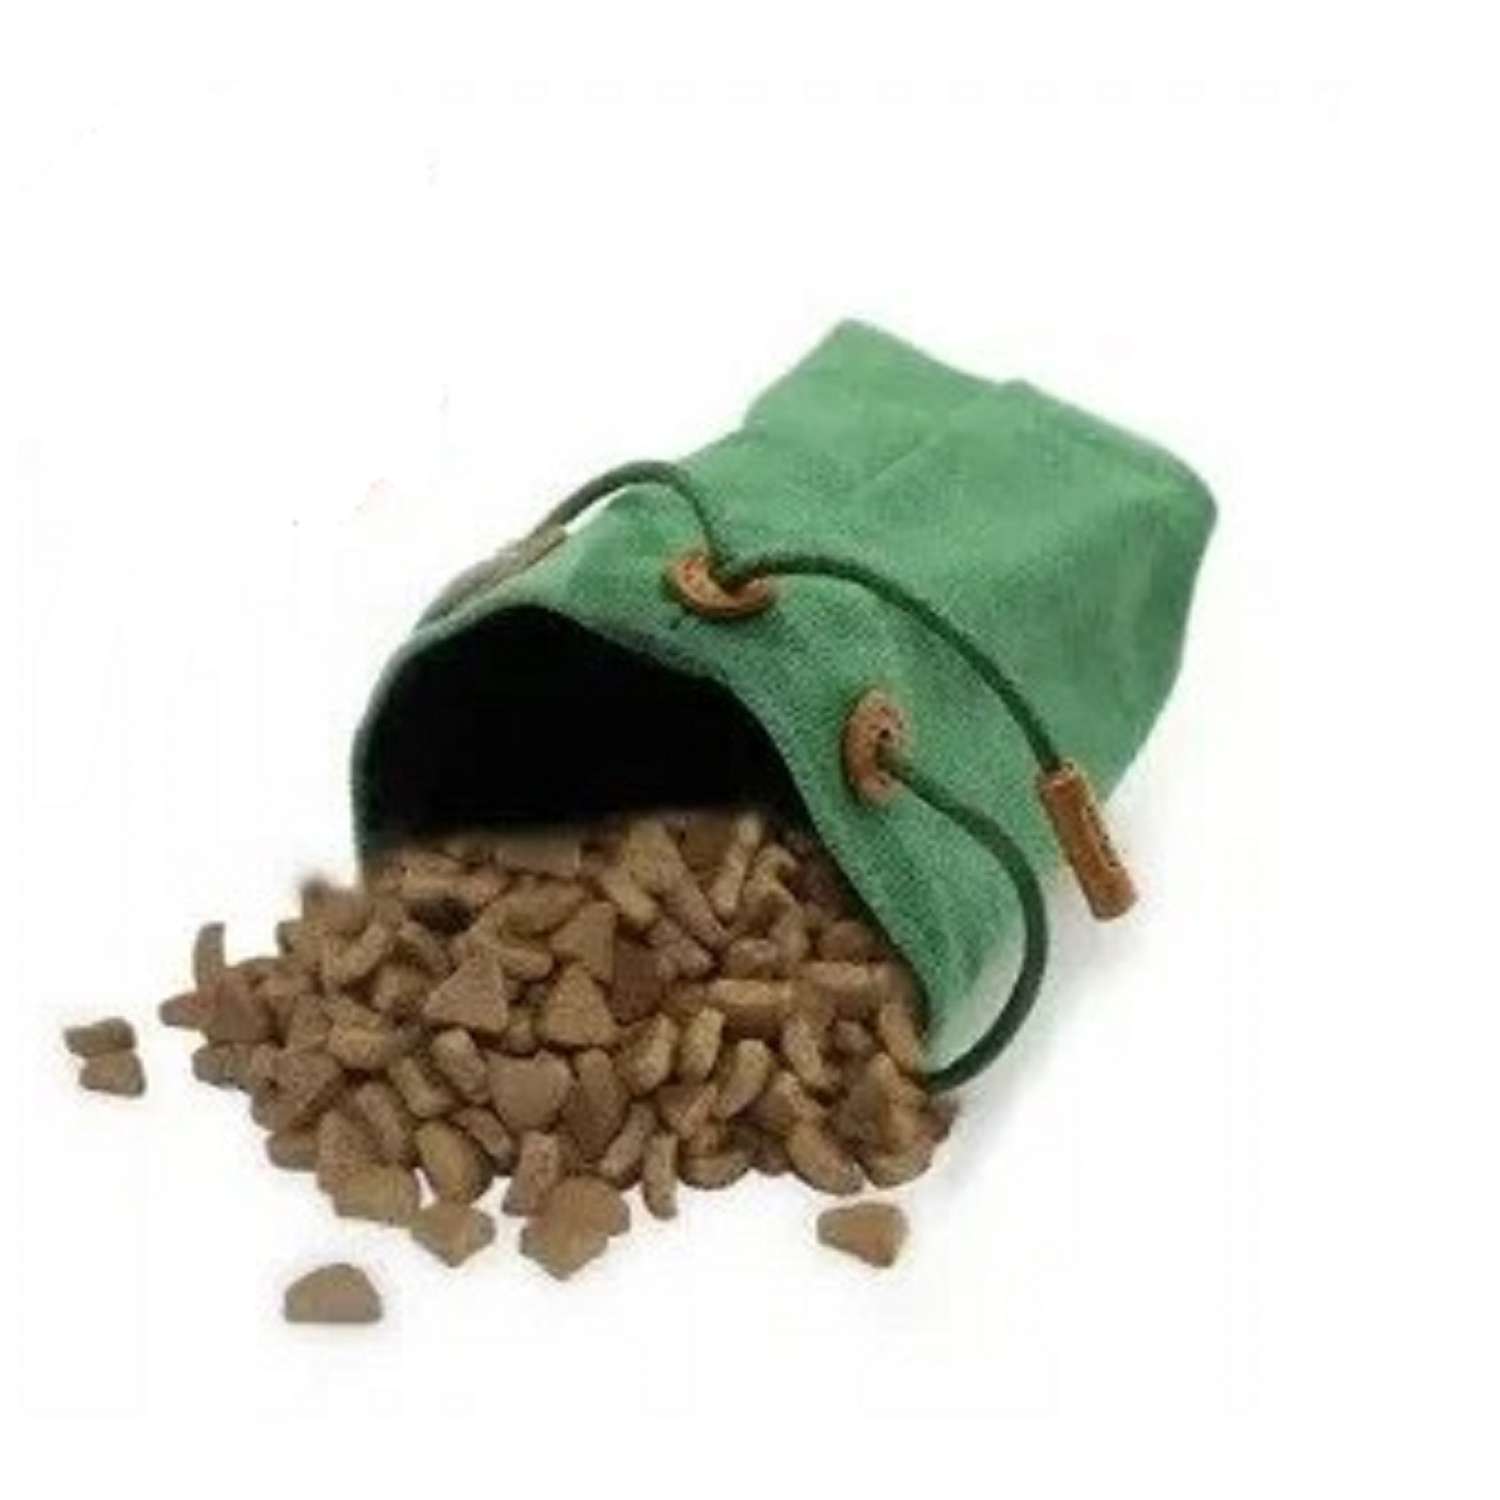 Сумка на пояс для лакомства ZDK ZooWell Training Premium поясная сумочка для корма и лакомств собак зеленая - фото 2